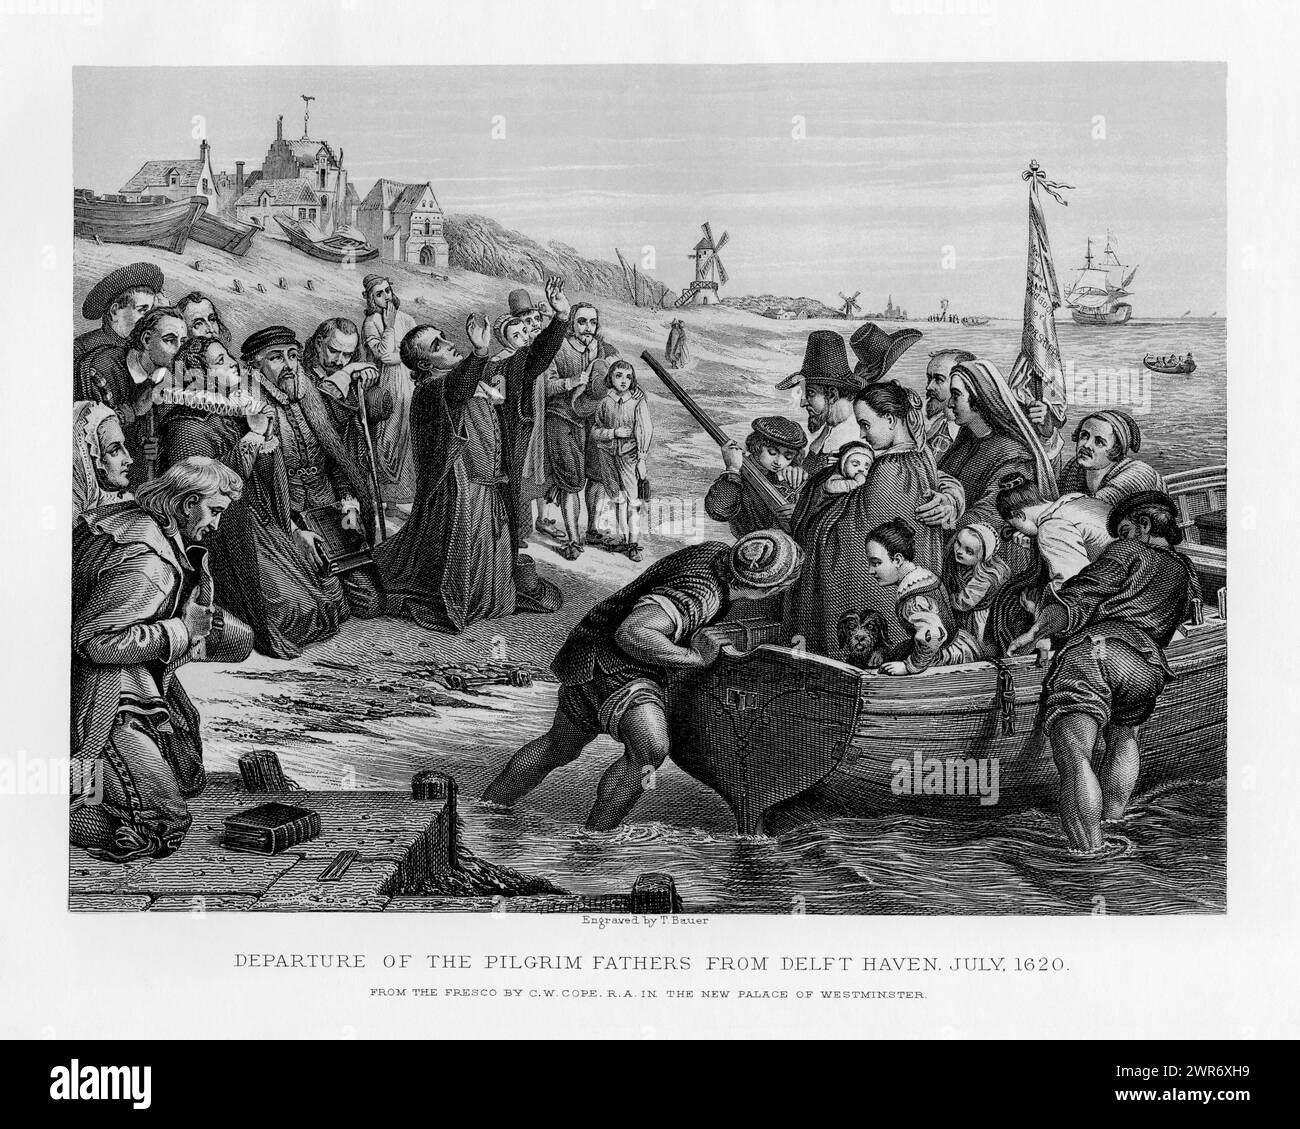 Die Pilgerväter starten im Juli 1620 von Delfshaven, dem ehemaligen Hafen von Delft, in den Niederlanden. Antiker Stich, erstmals 1878 veröffentlicht. Stich von T. Bauer nach einem Fresko von Charles West Cope R.A. Stockfoto